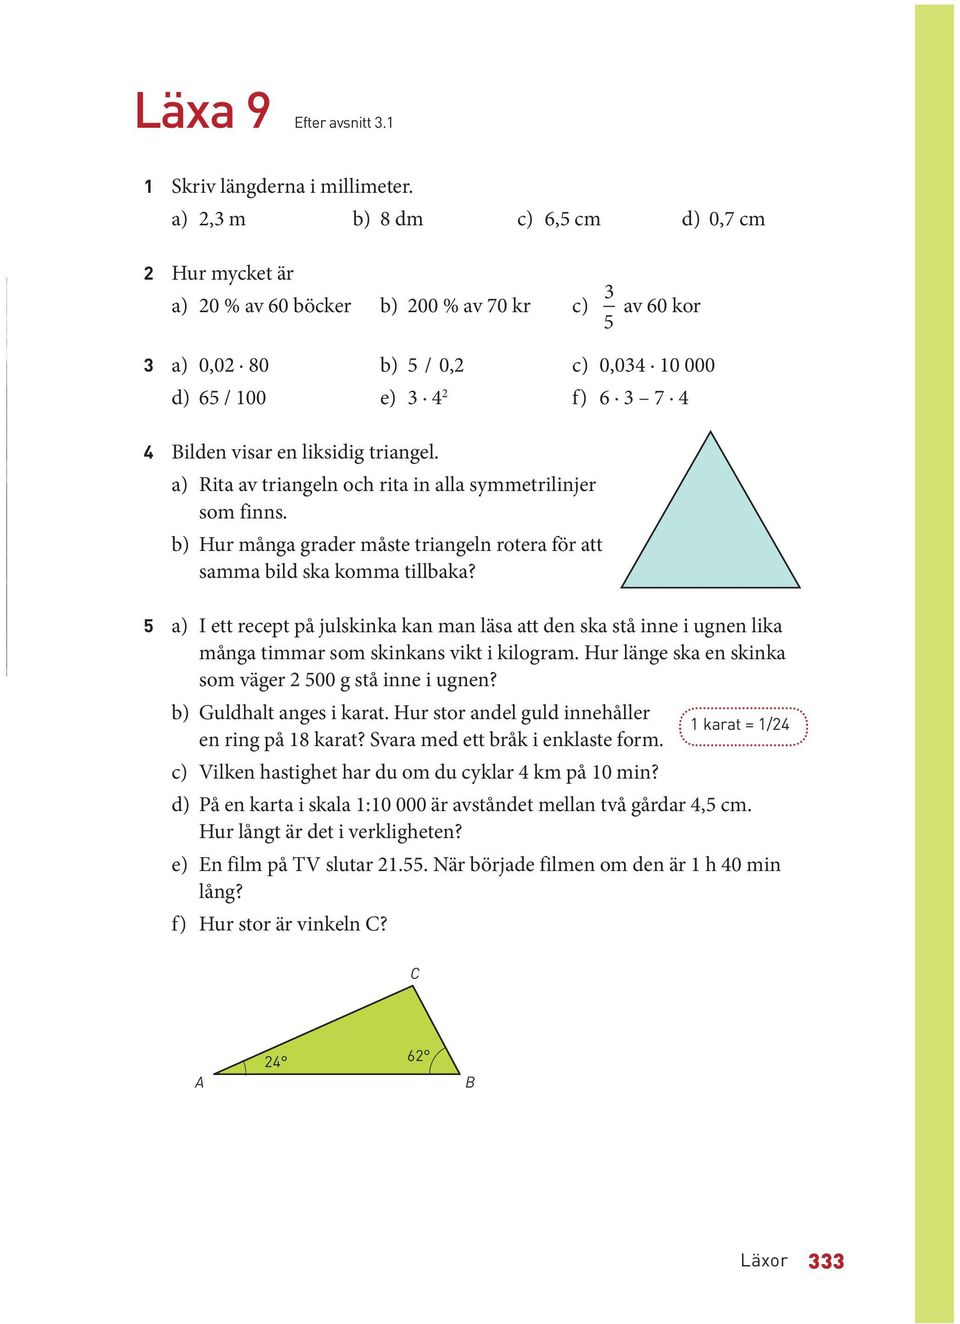 a) Rita av triangeln och rita in alla symmetrilinjer som finns. b) Hur många grader måste triangeln rotera för att samma bild ska komma tillbaka?